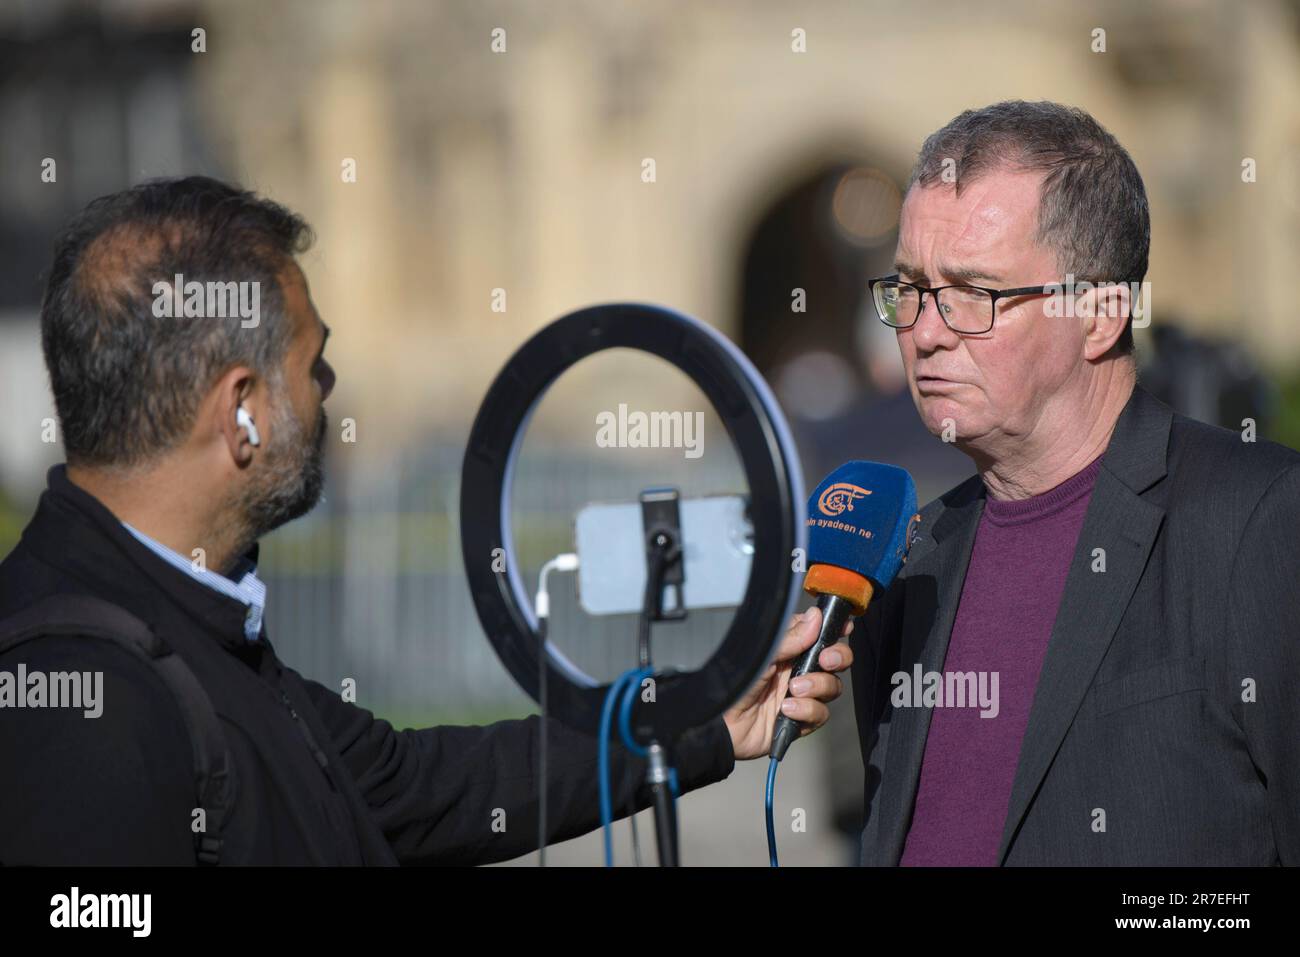 Chris Bambery - attivista politico scozzese, socialista, autore, giornalista, presentatore televisivo e produttore - intervistato su College Green, Westminster Foto Stock